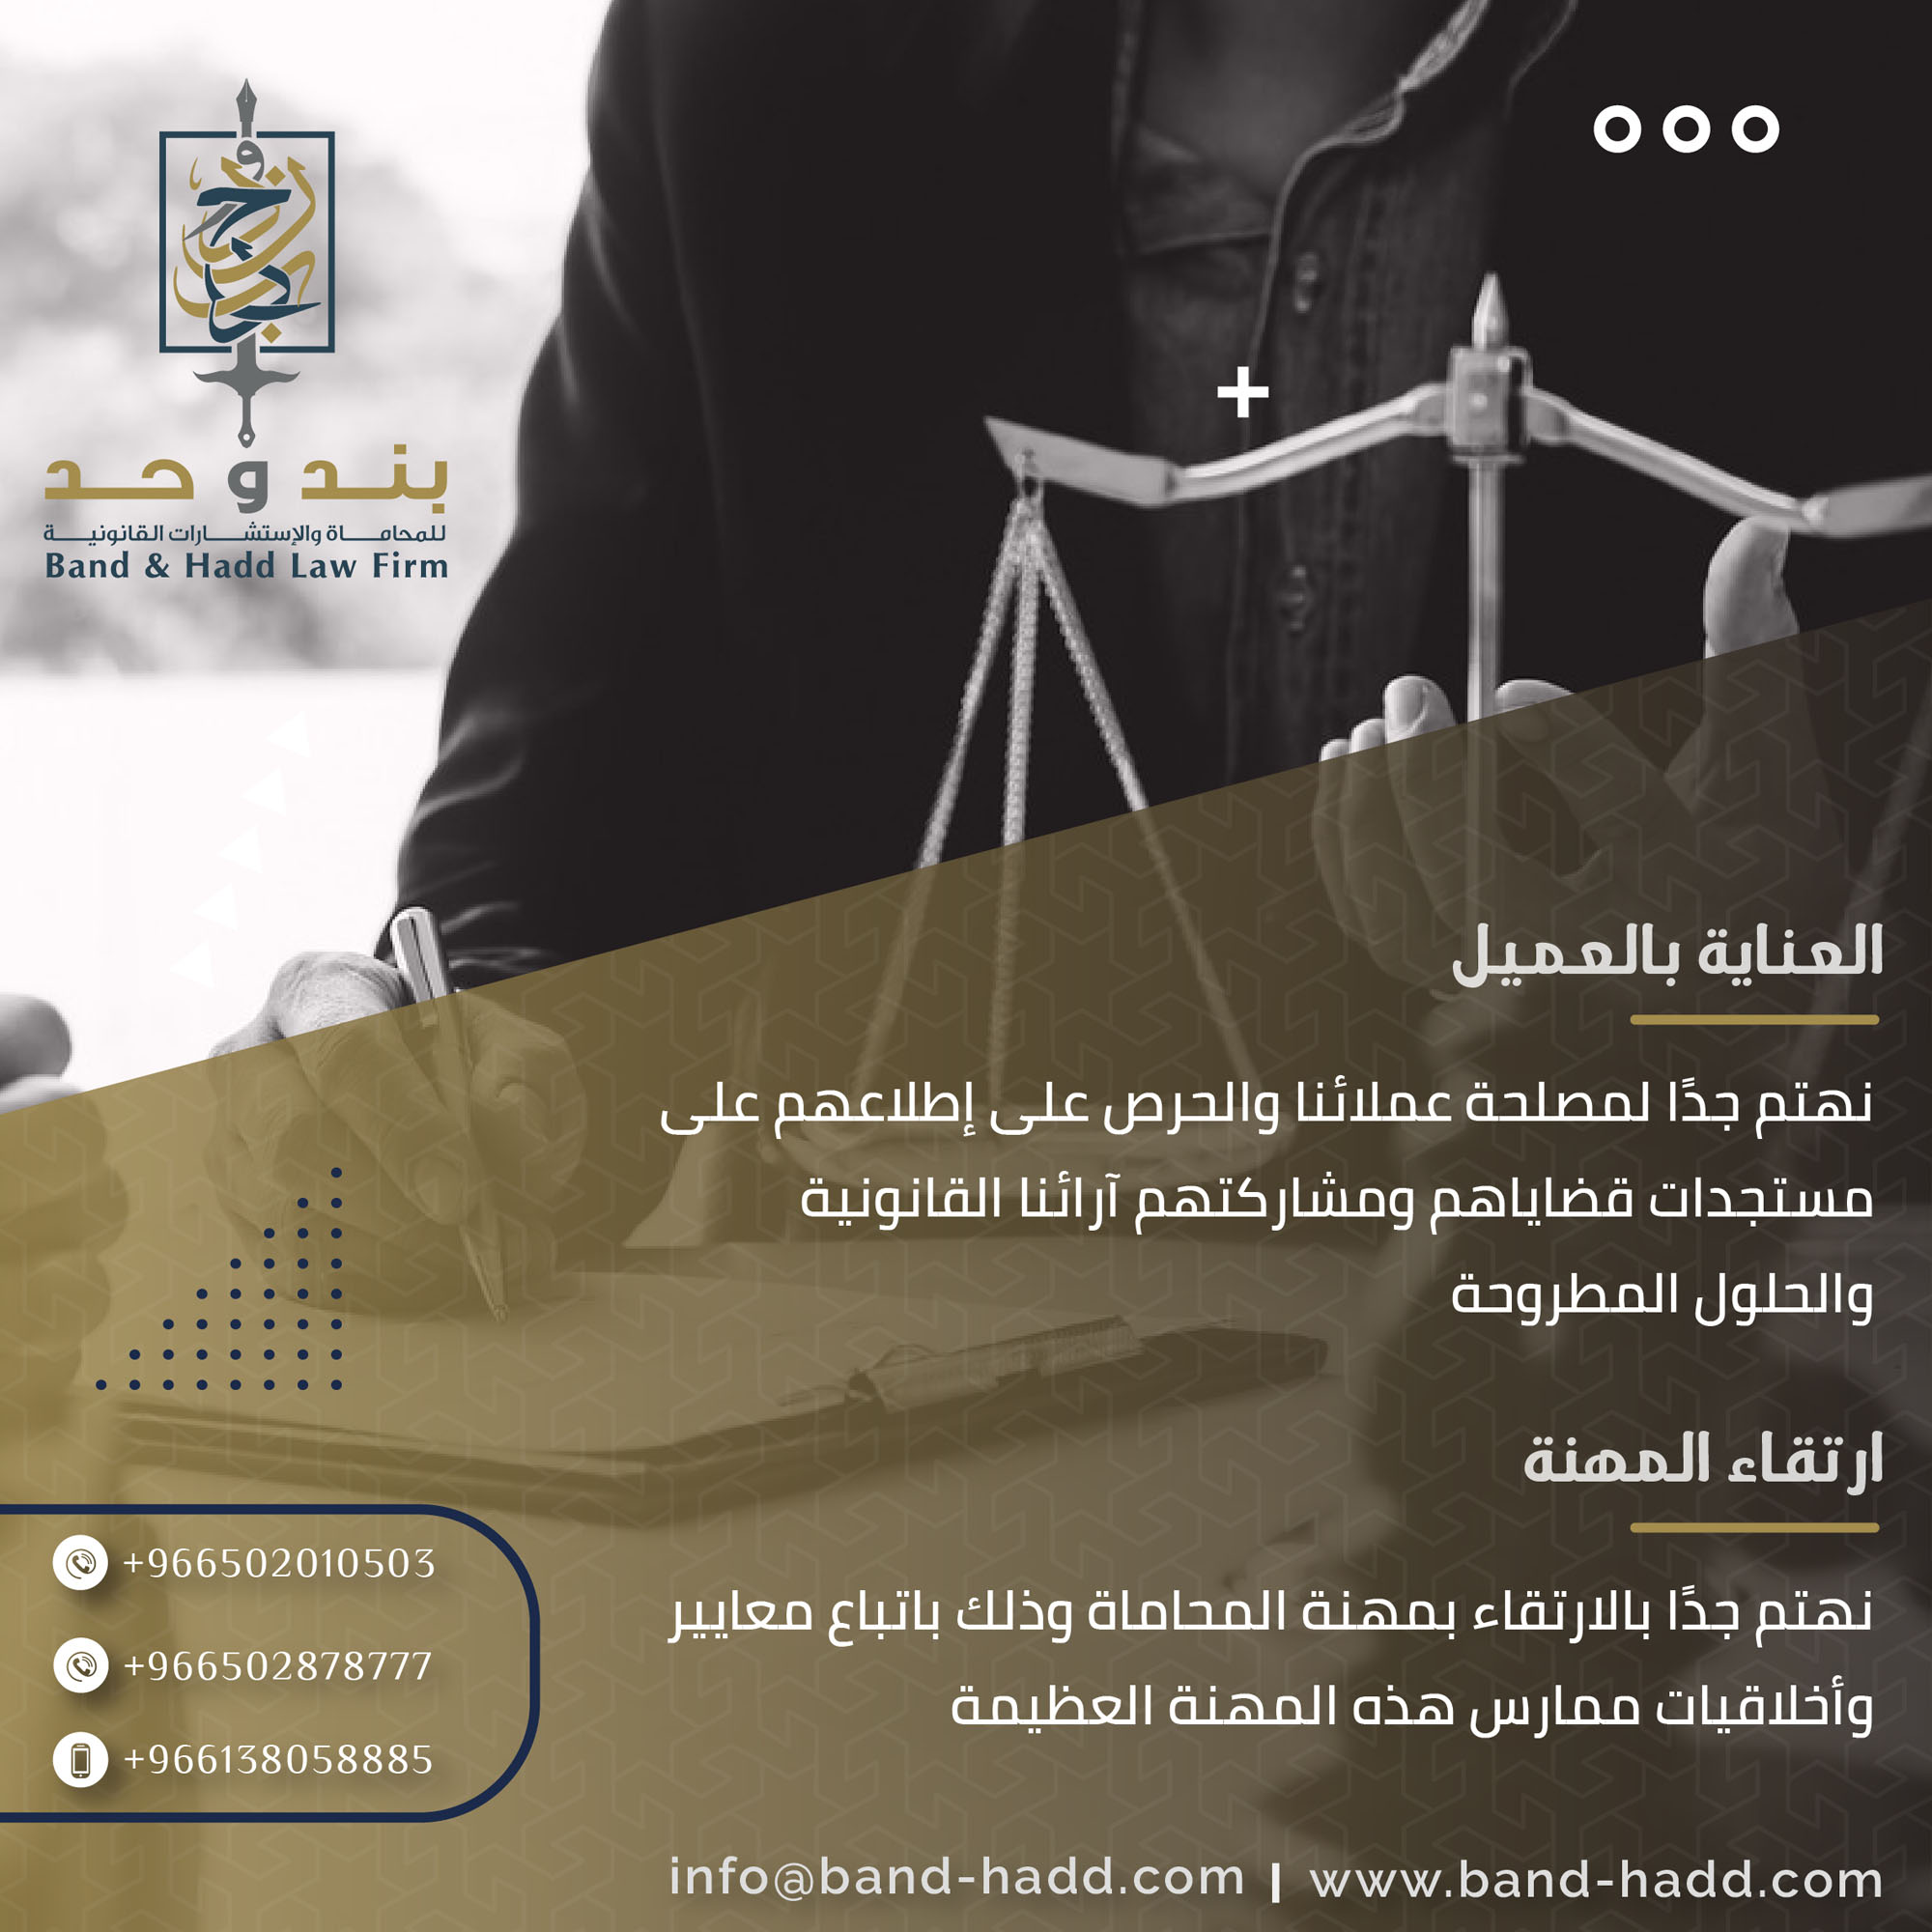 تصميم اعلانات لشركة محاماه في السعودية - شركة بند وحد للمحاماه